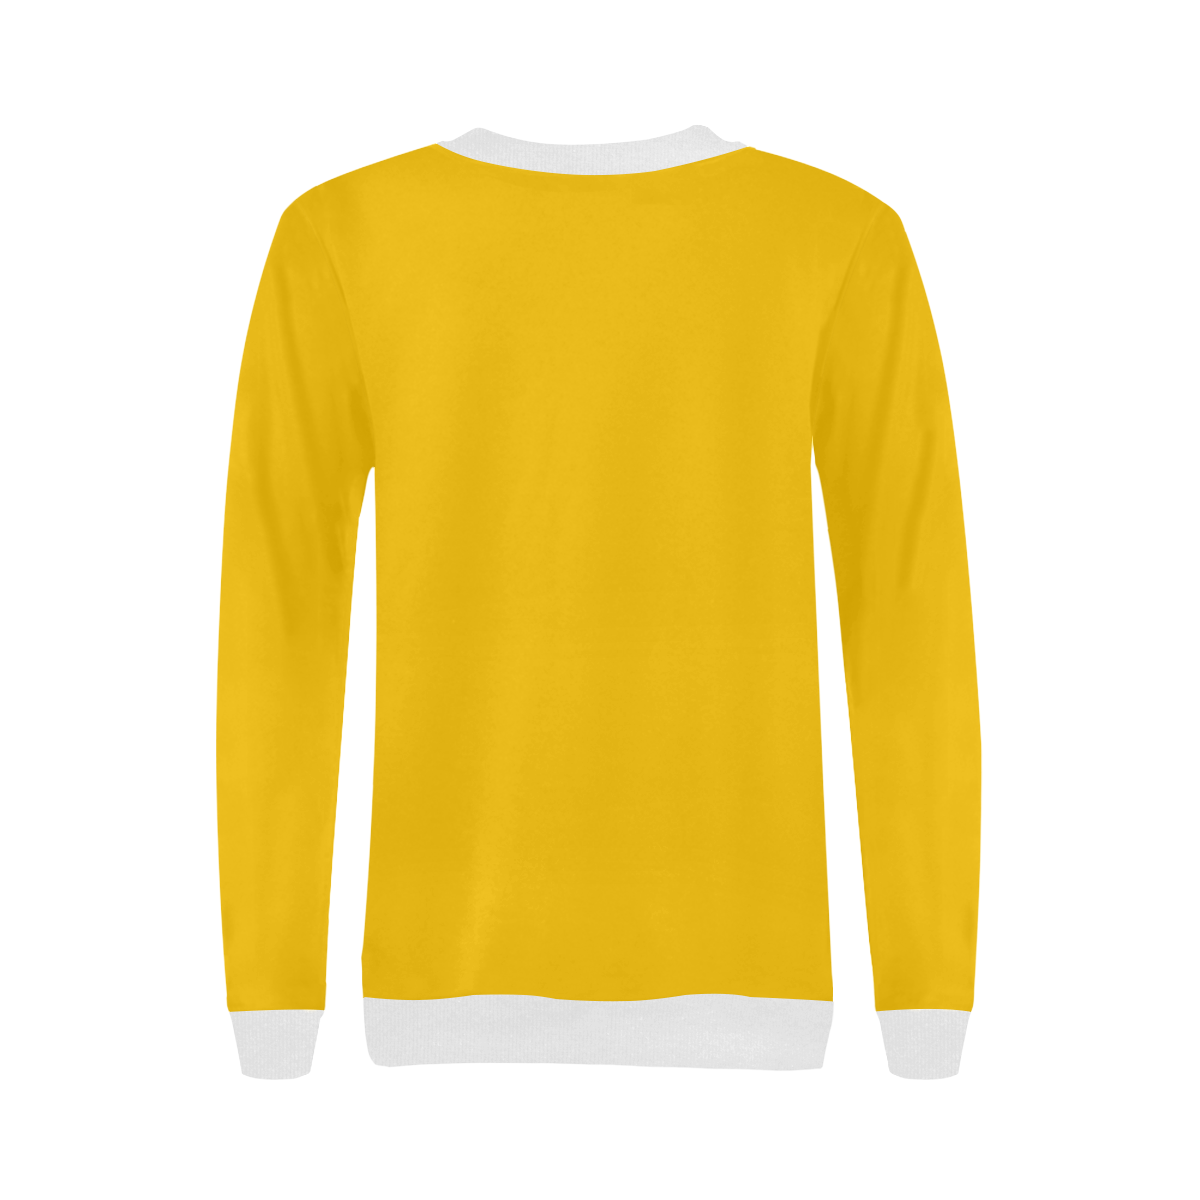 Adorable Yorkie Sugar Skull Yellow/White Women's Rib Cuff Crew Neck Sweatshirt (Model H34)